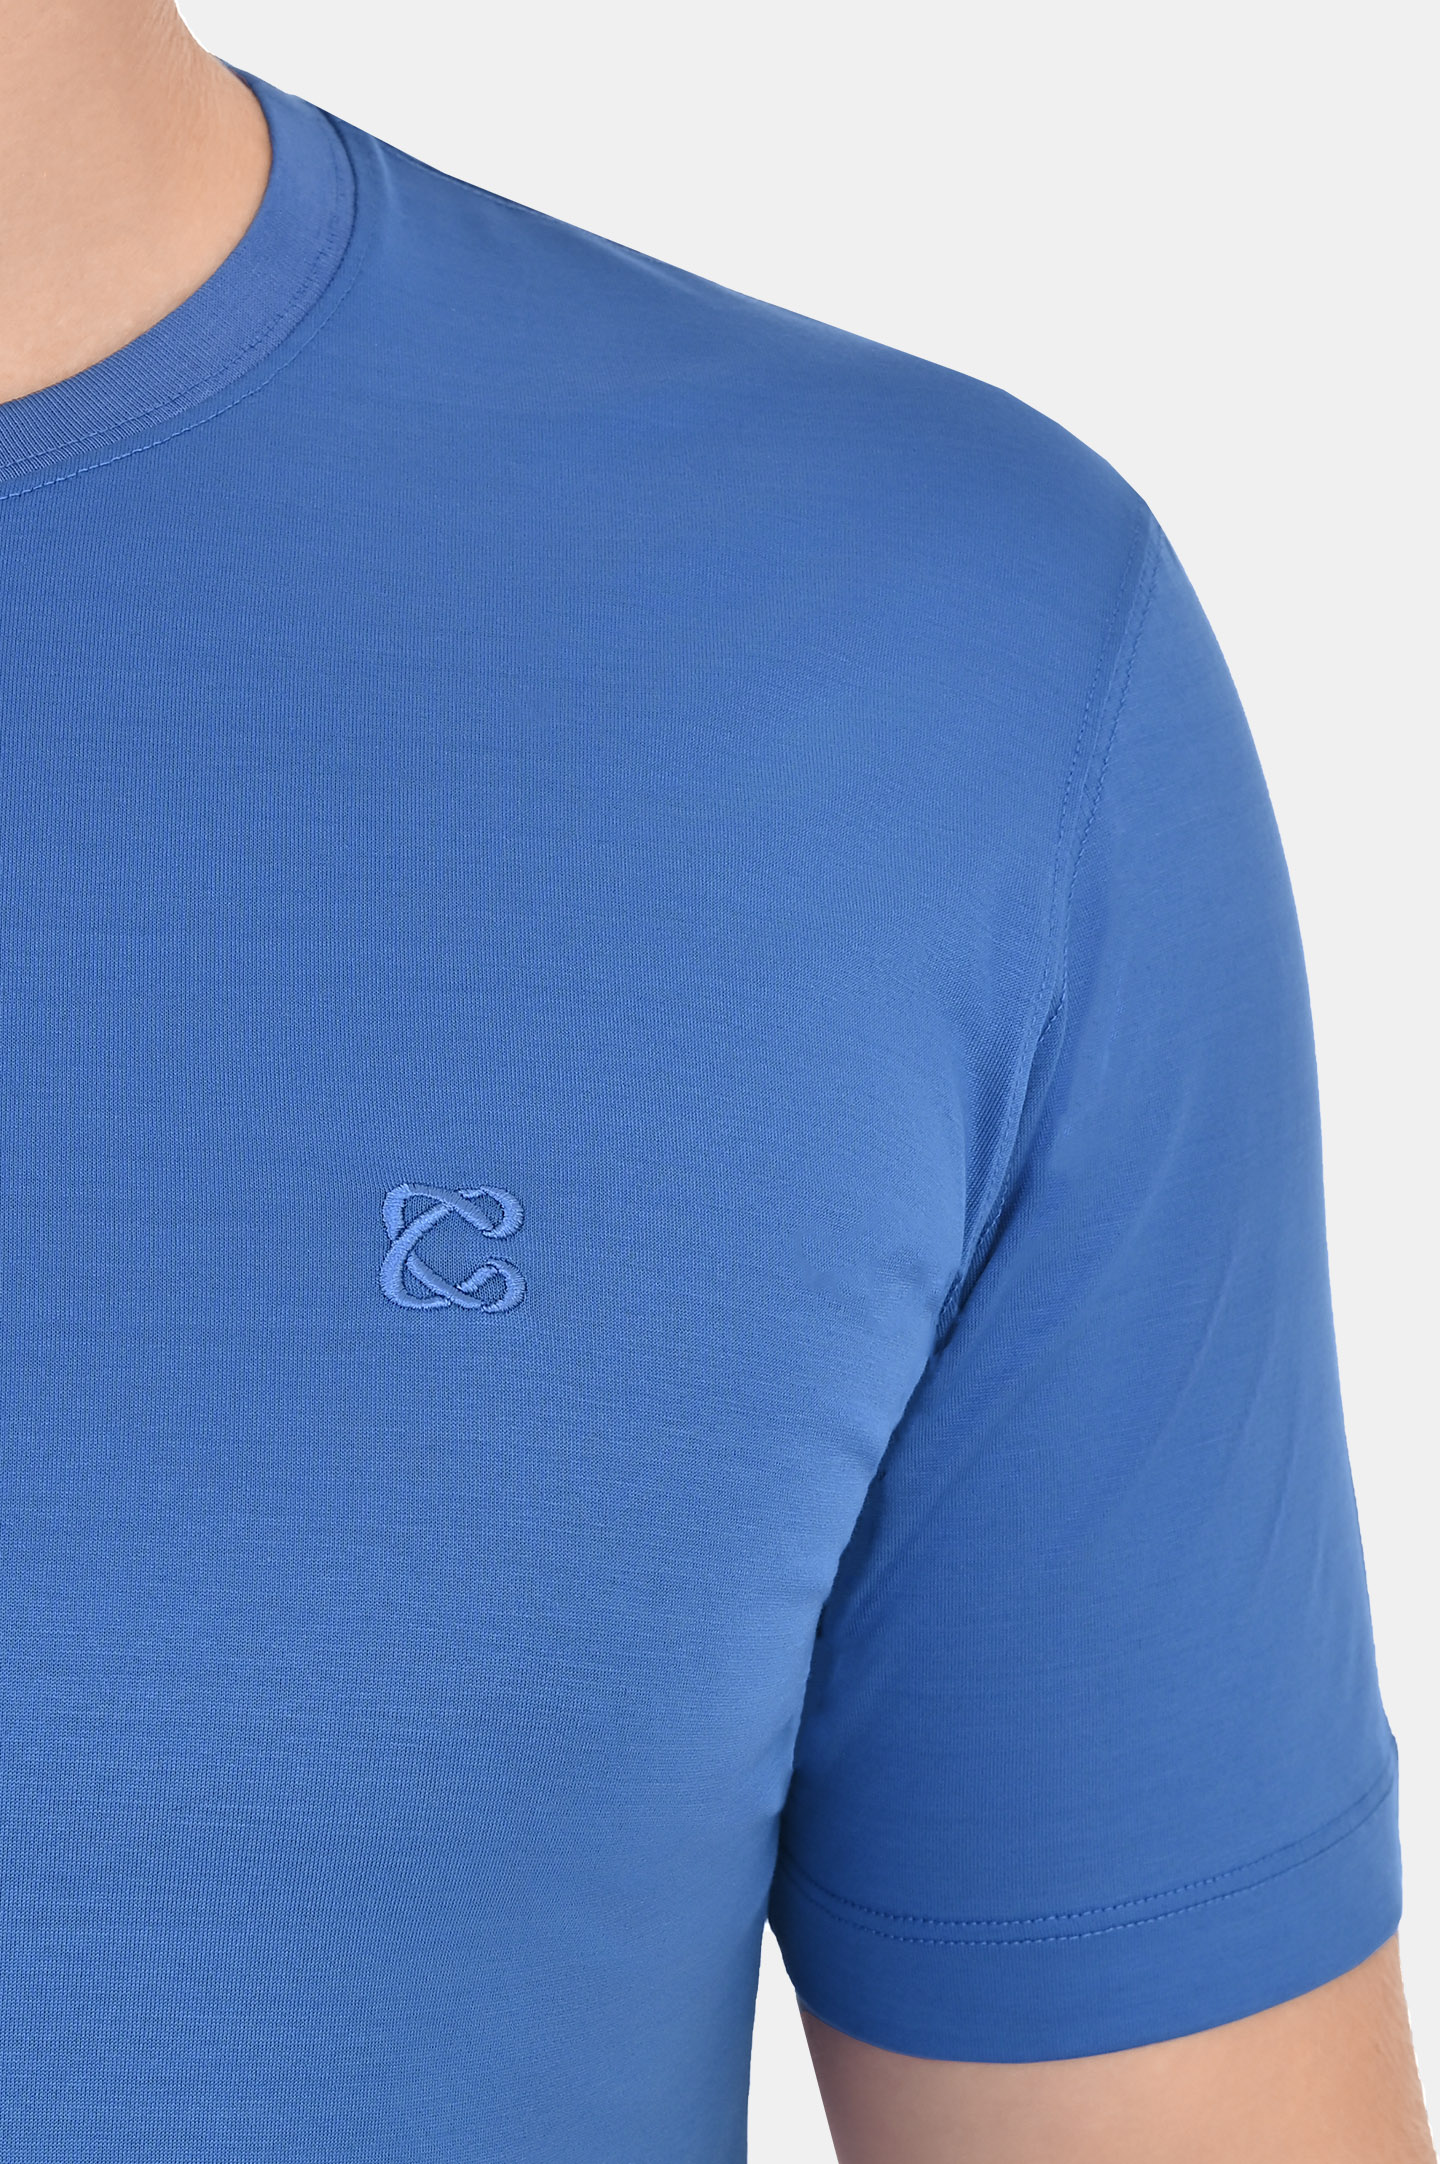 Базовая хлопковая футболка CASTANGIA DM66, цвет: Голубой, Мужской